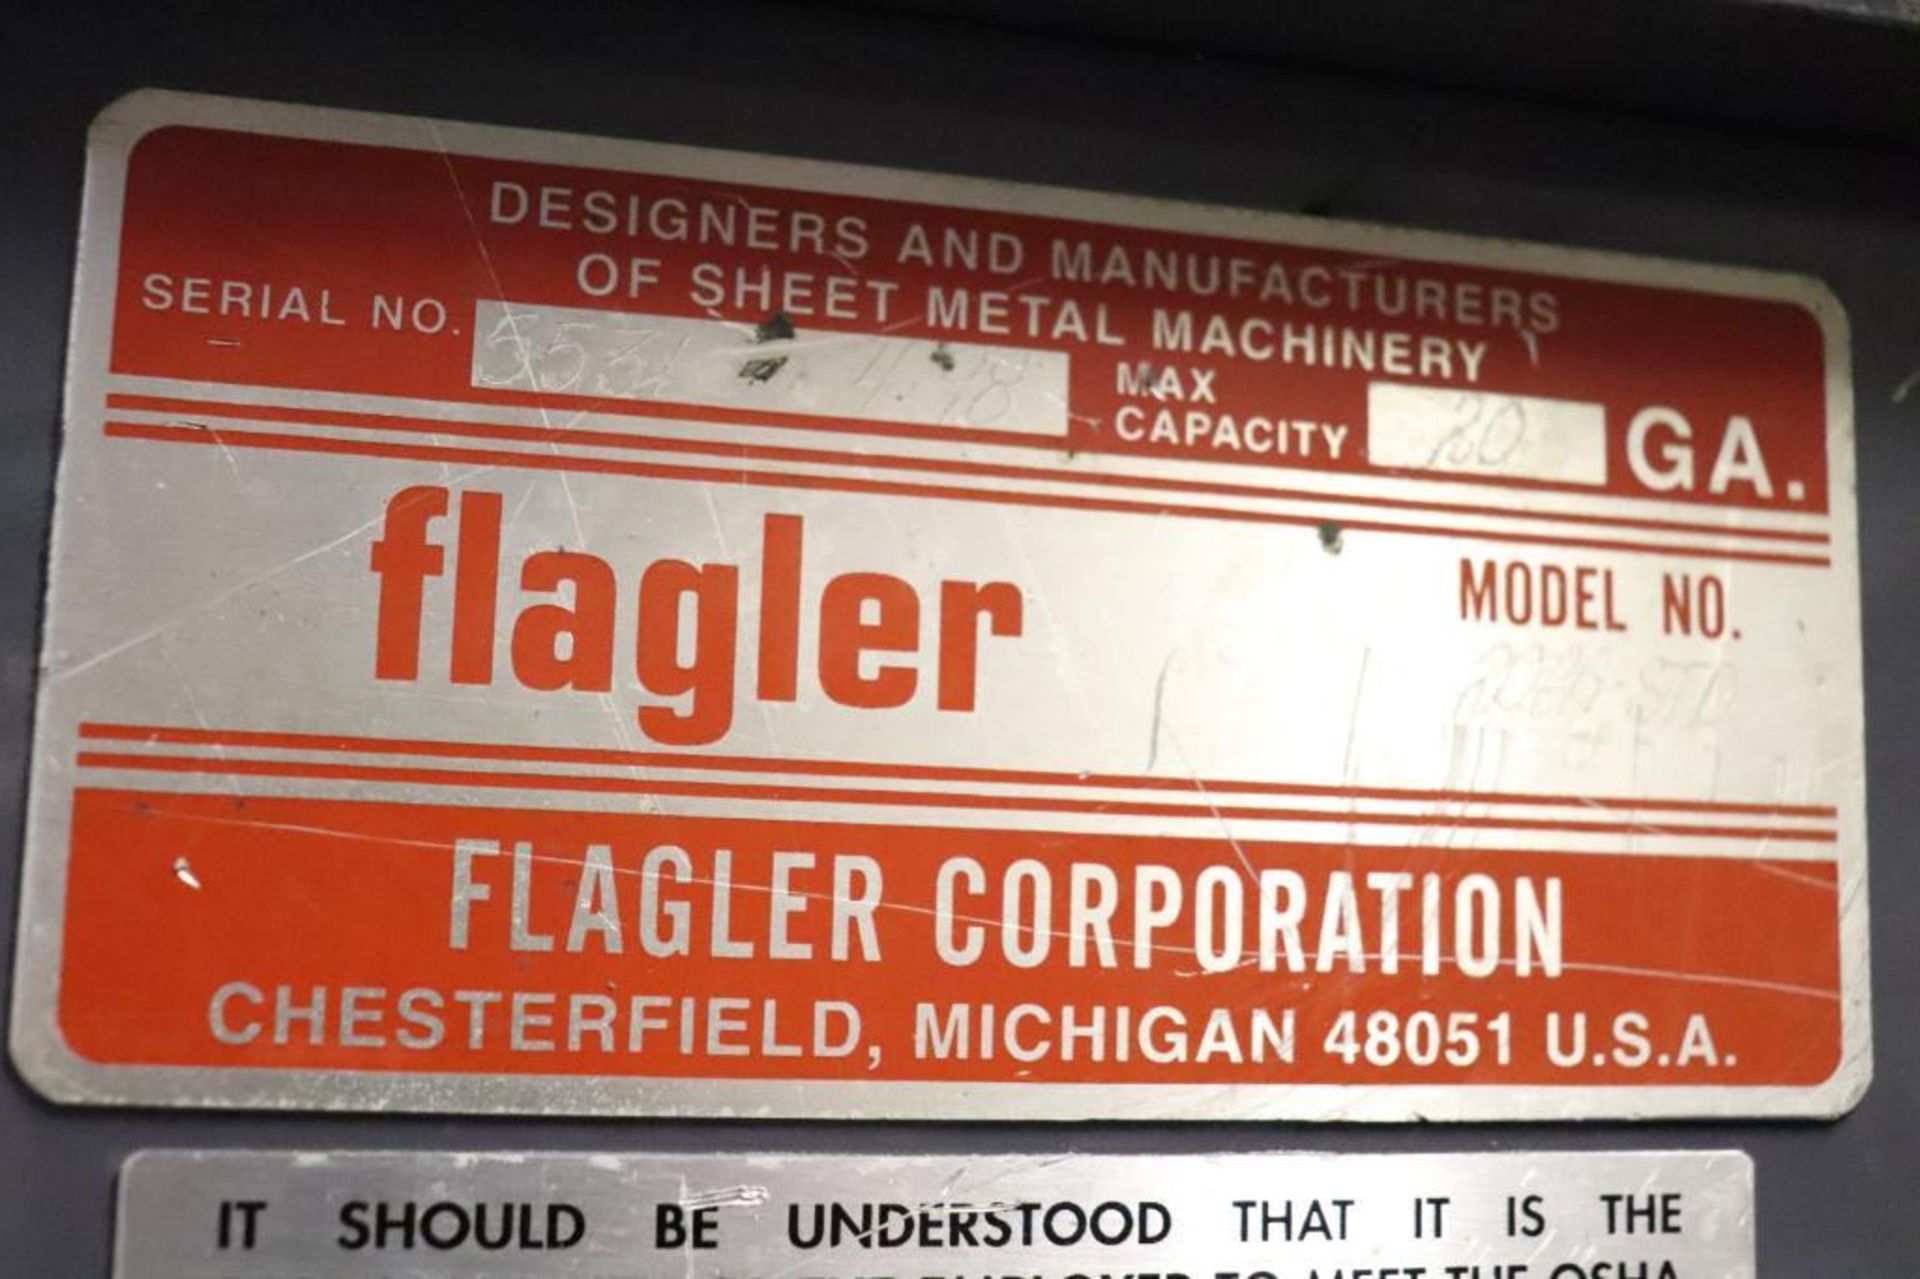 Flagler 20 GA-STD 6 station roll former - Image 3 of 6